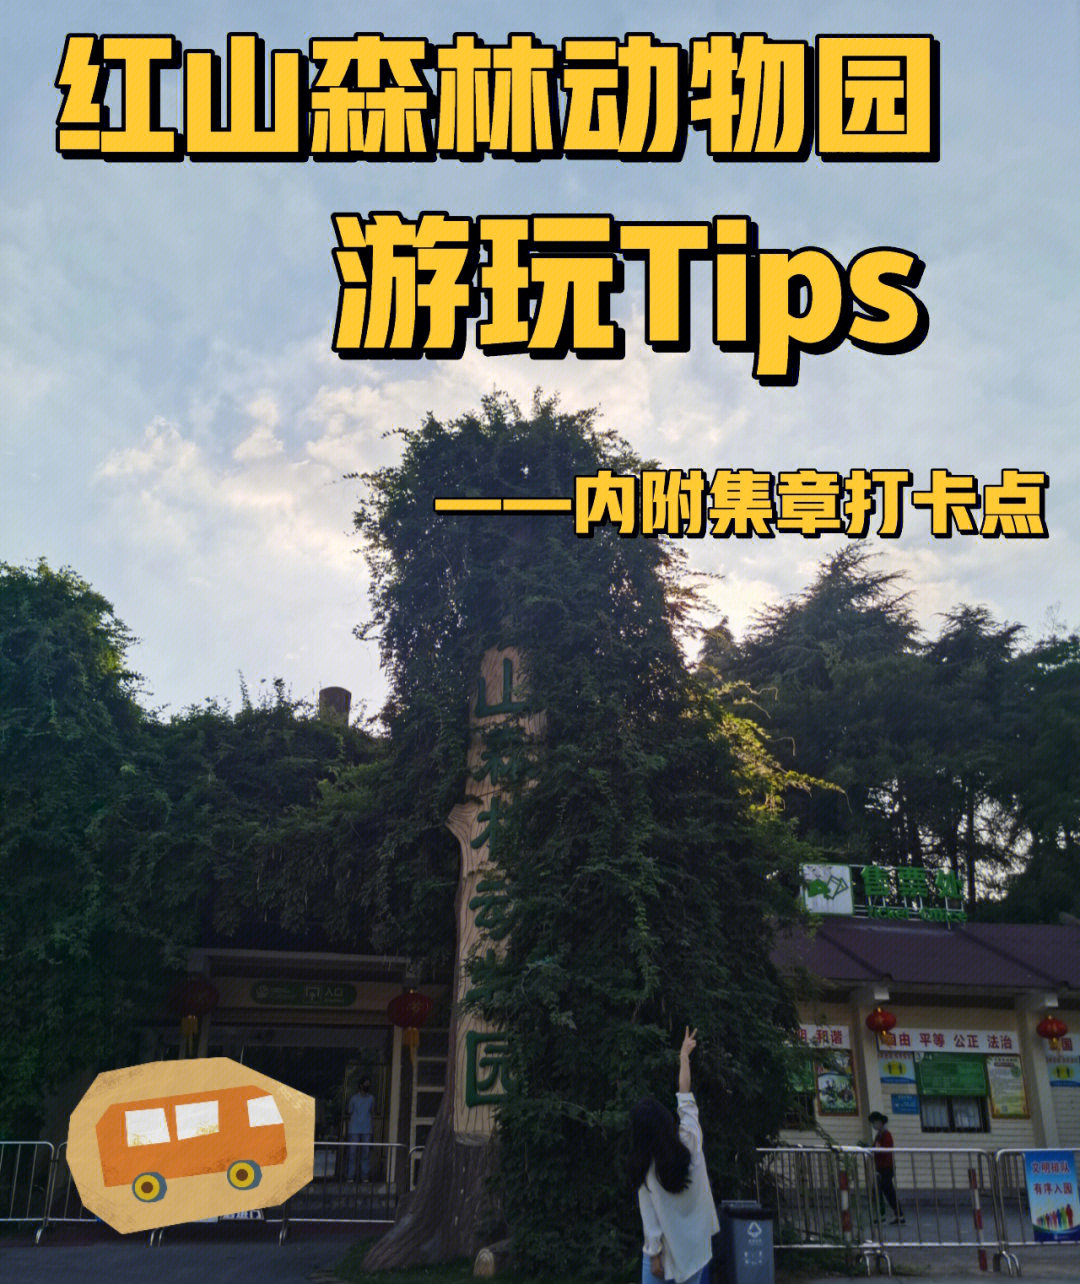 [打卡r]南京红山森林动物园[种草r]路线:去动物园的详见图2  内部游玩